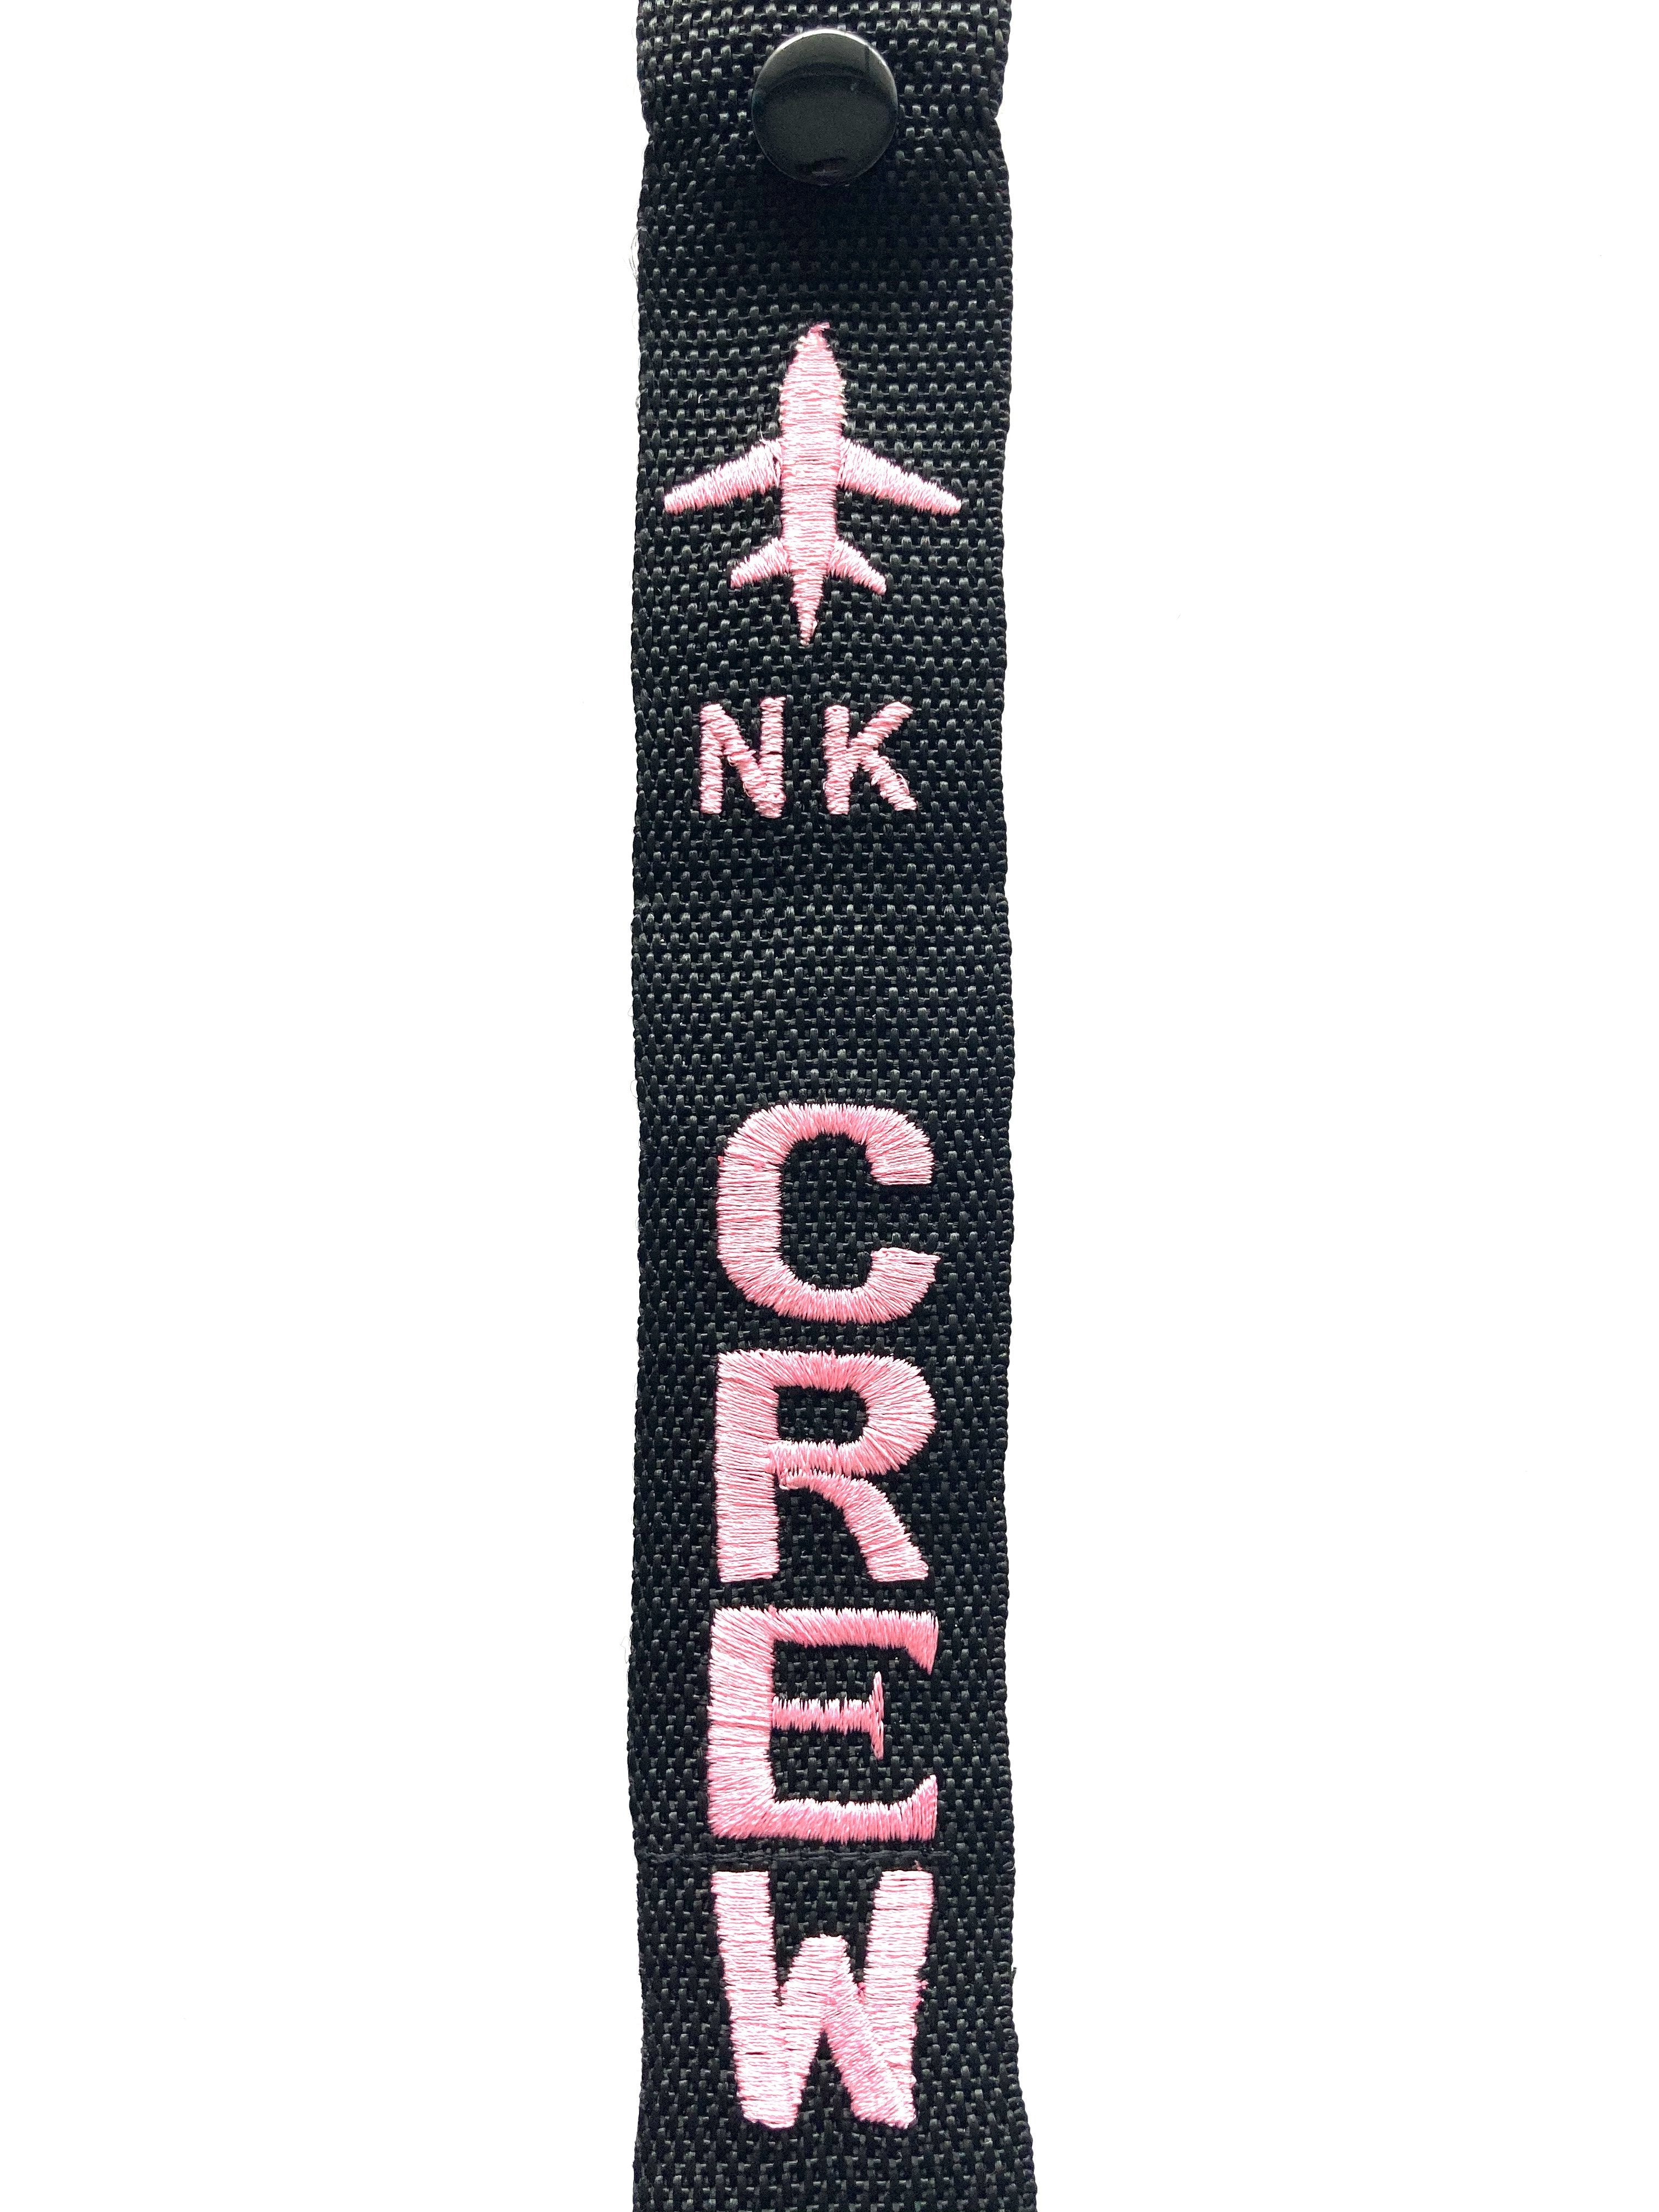 SPIRIT Luggage Tag - Spirit Airlines yellow NK crew pink